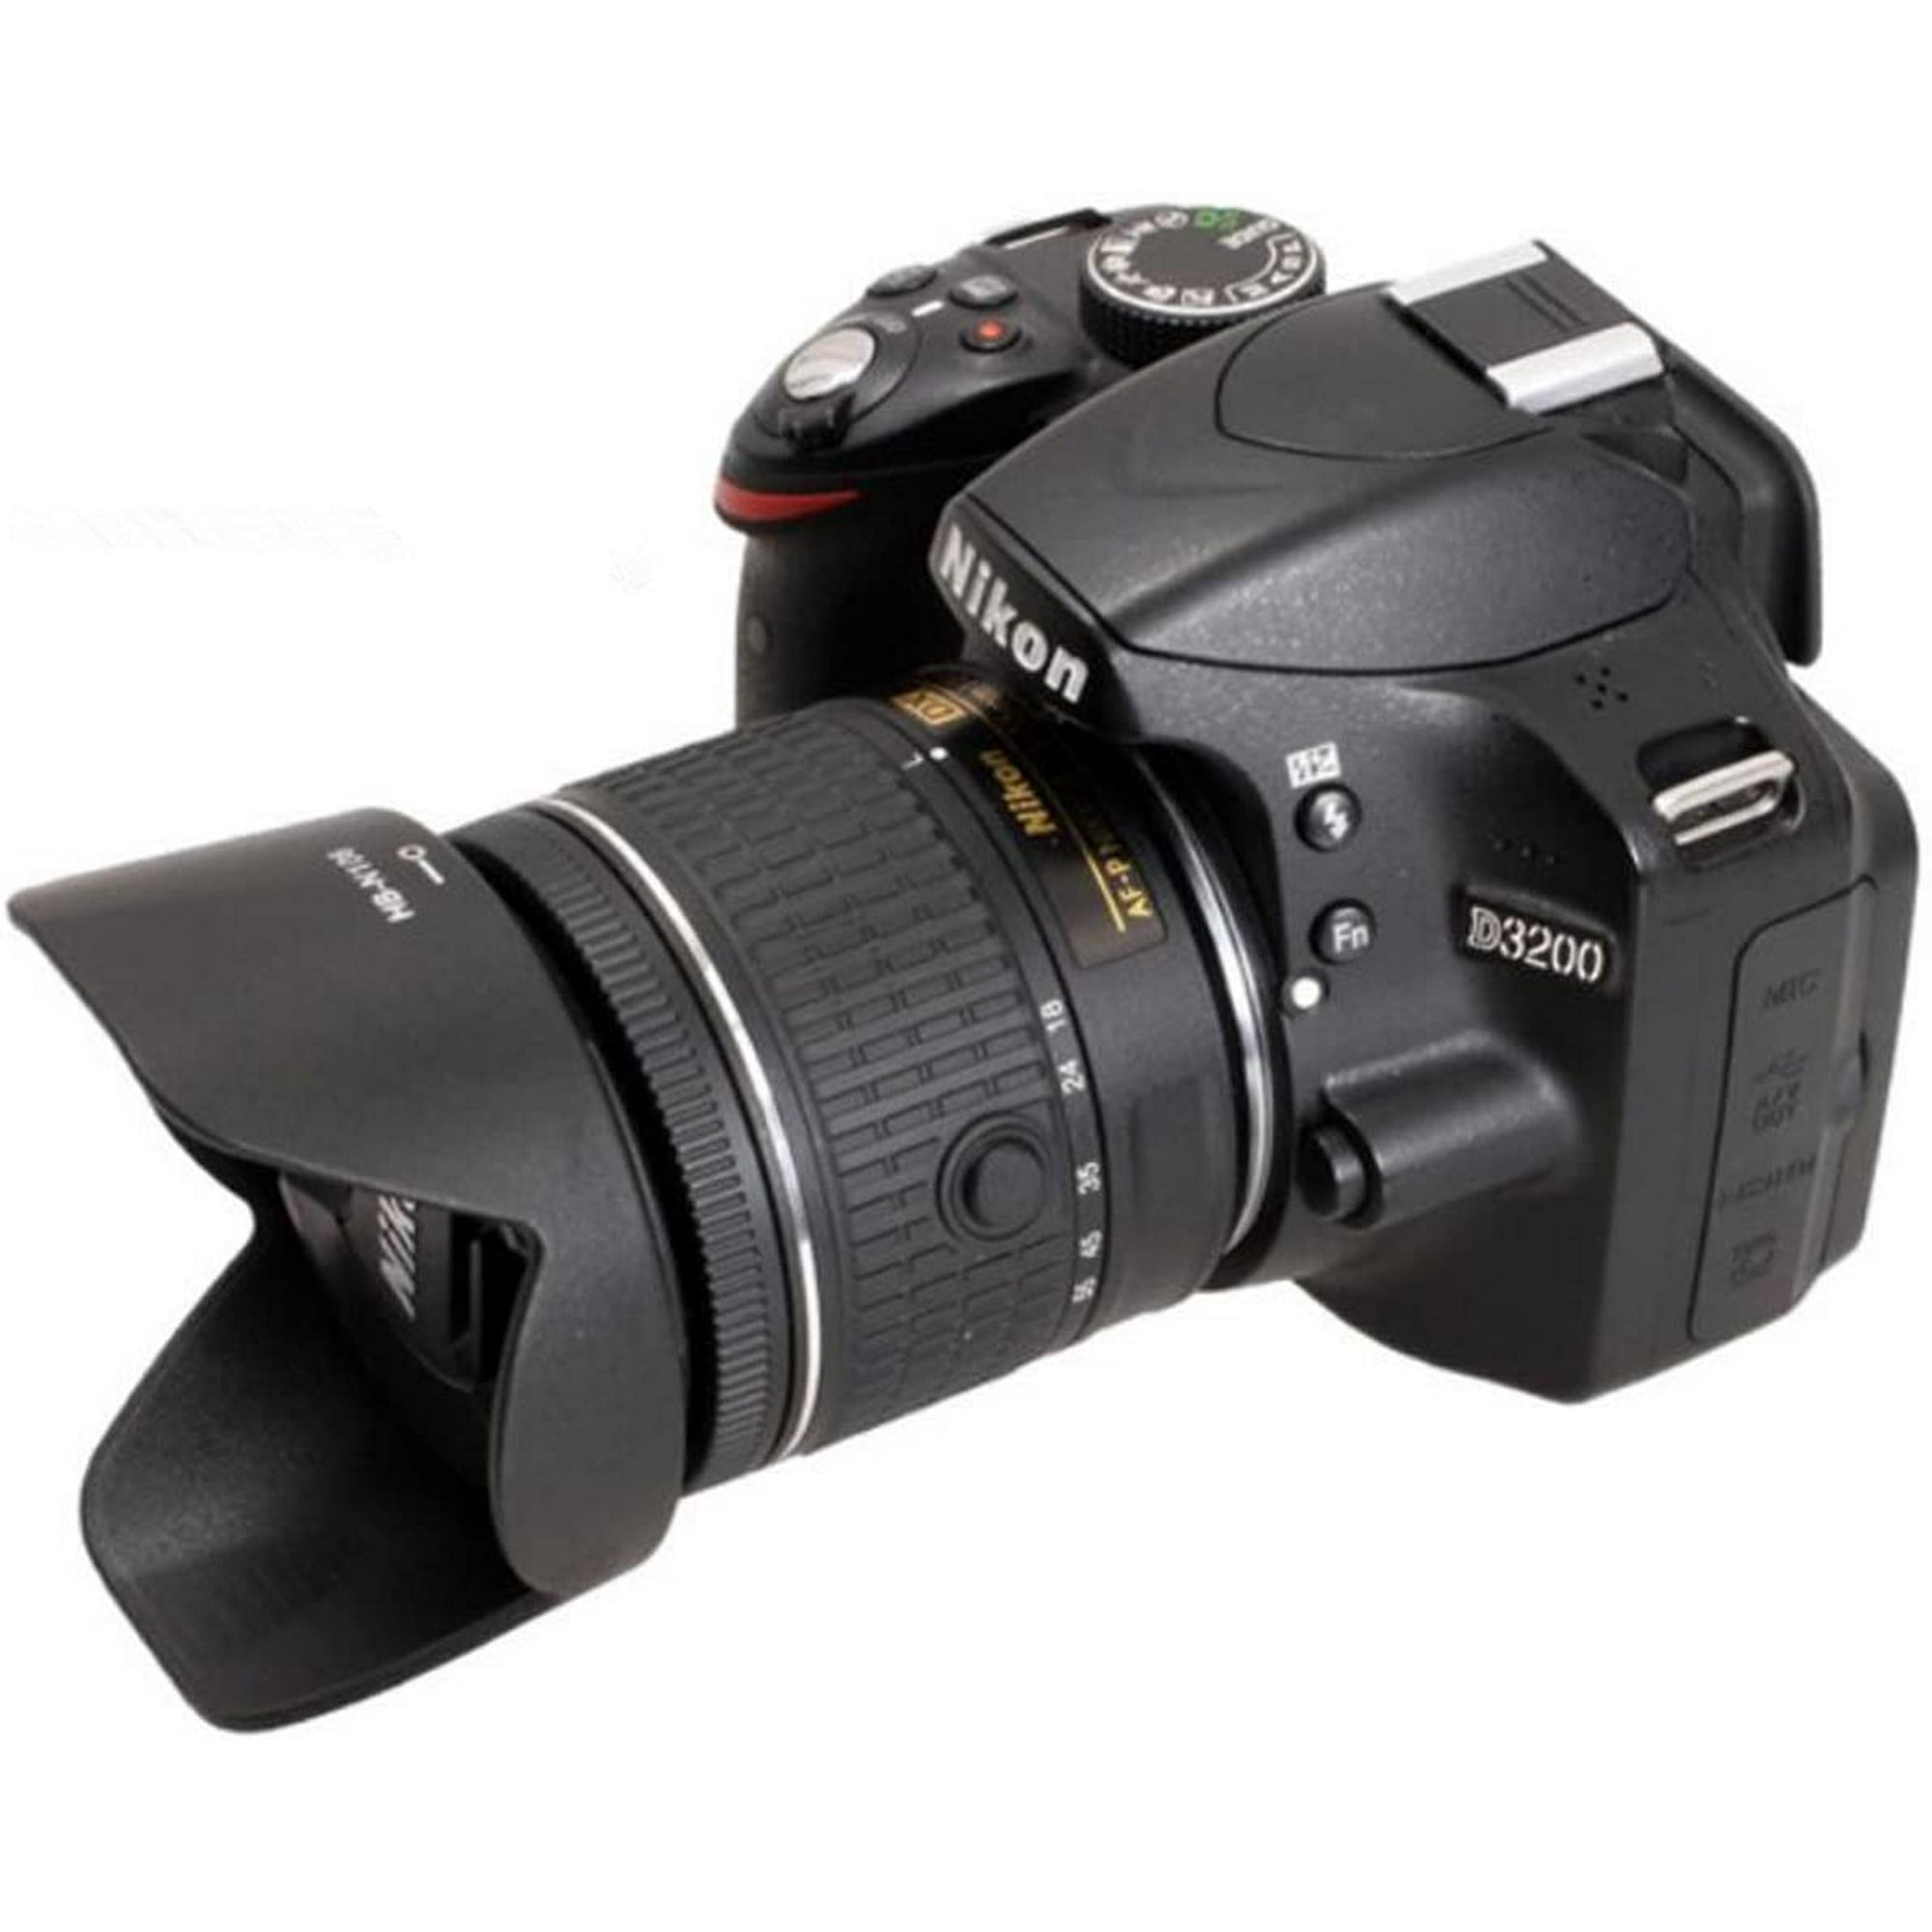 HB-N106 Reversible Bayonet Flower Lens Hood for Nikon AF-P DX NIKKOR 18-55mm f/3.5-5.6G VR Nikon 1NIKKOR VR 10-100mm f/4-5.6 Nikon AF-P DX NIKKOR 18-55mm f/3.5-5.6G Lens Replaces Nikon HB-N106 